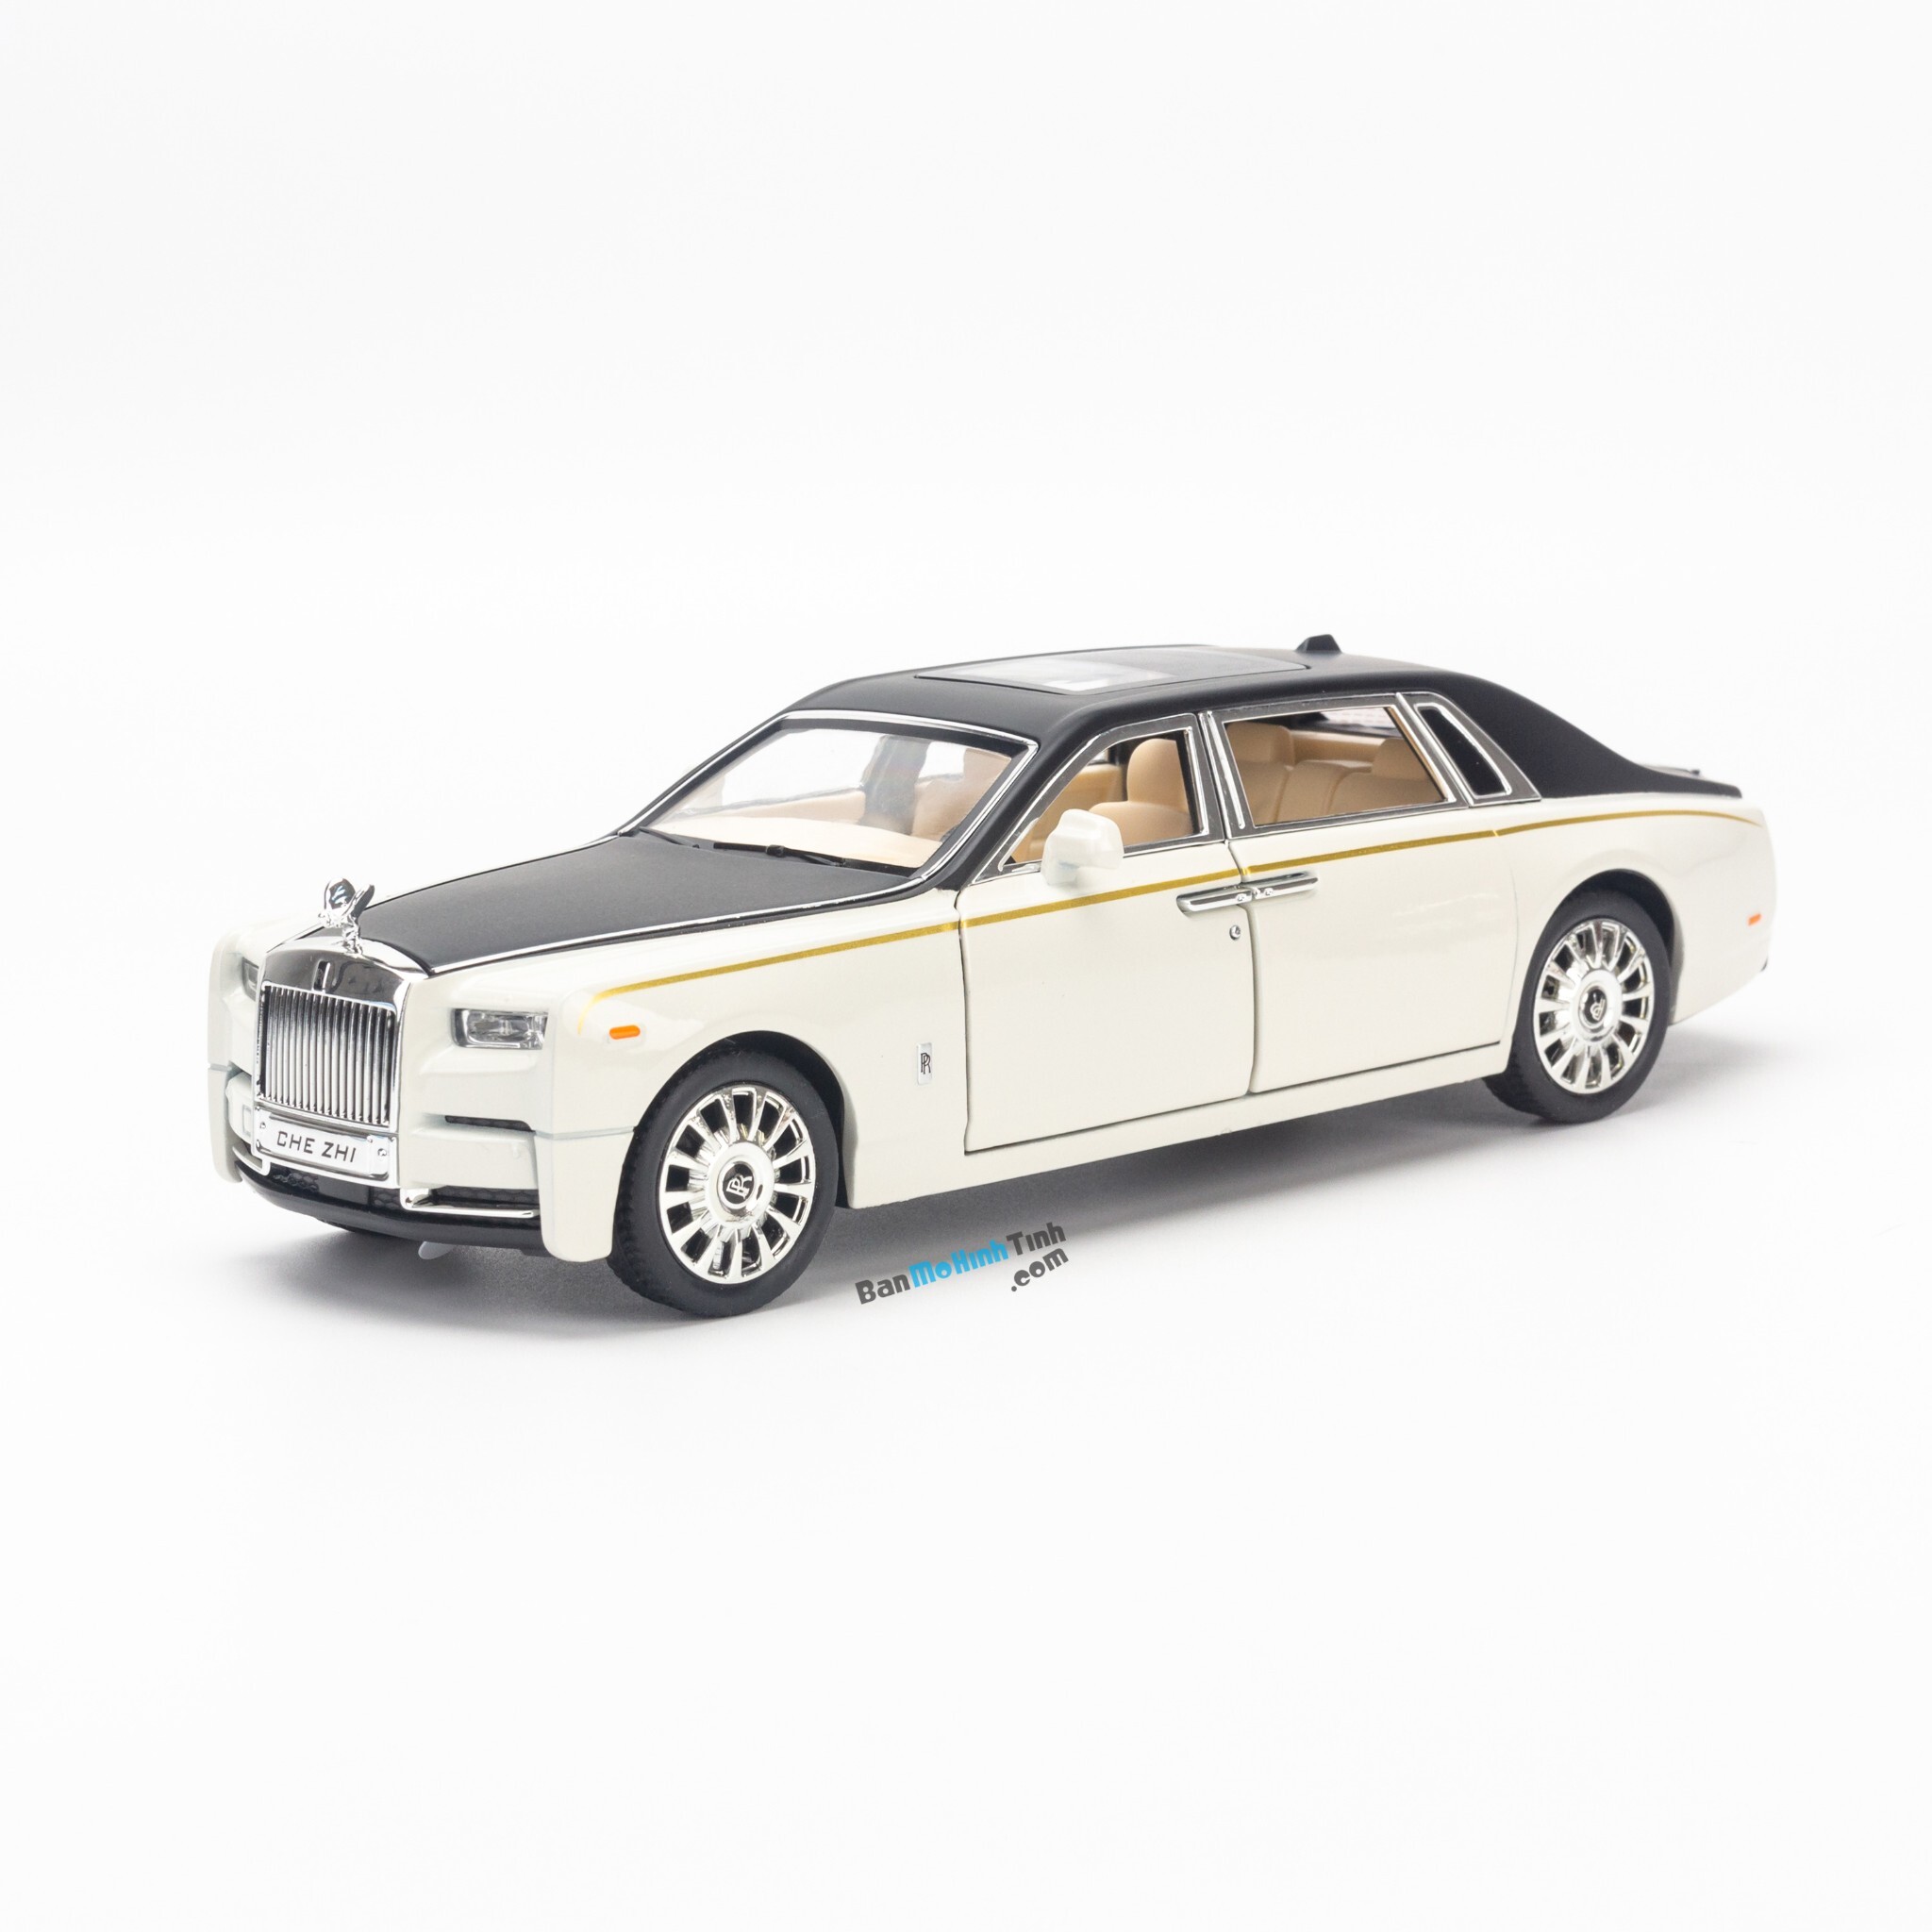 Xe mô hình Rolls Royce Phantom VIII 1:24